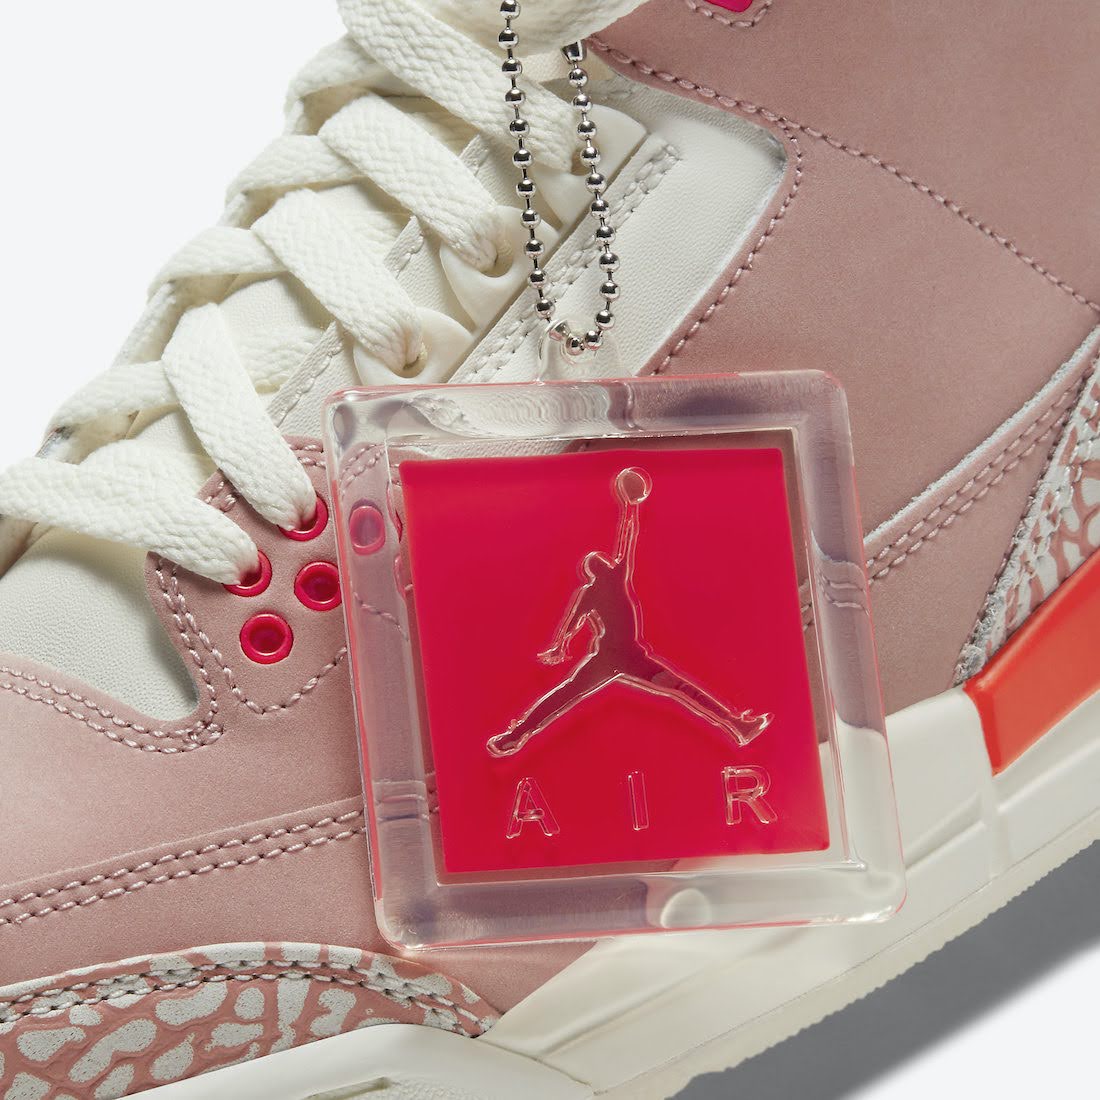 ナイキ ウィメンズ エア ジョーダン 3 "ラストピンク" Nike-Air-Jordan-3-Rust-Pink-CK9246-600-tag-closeup